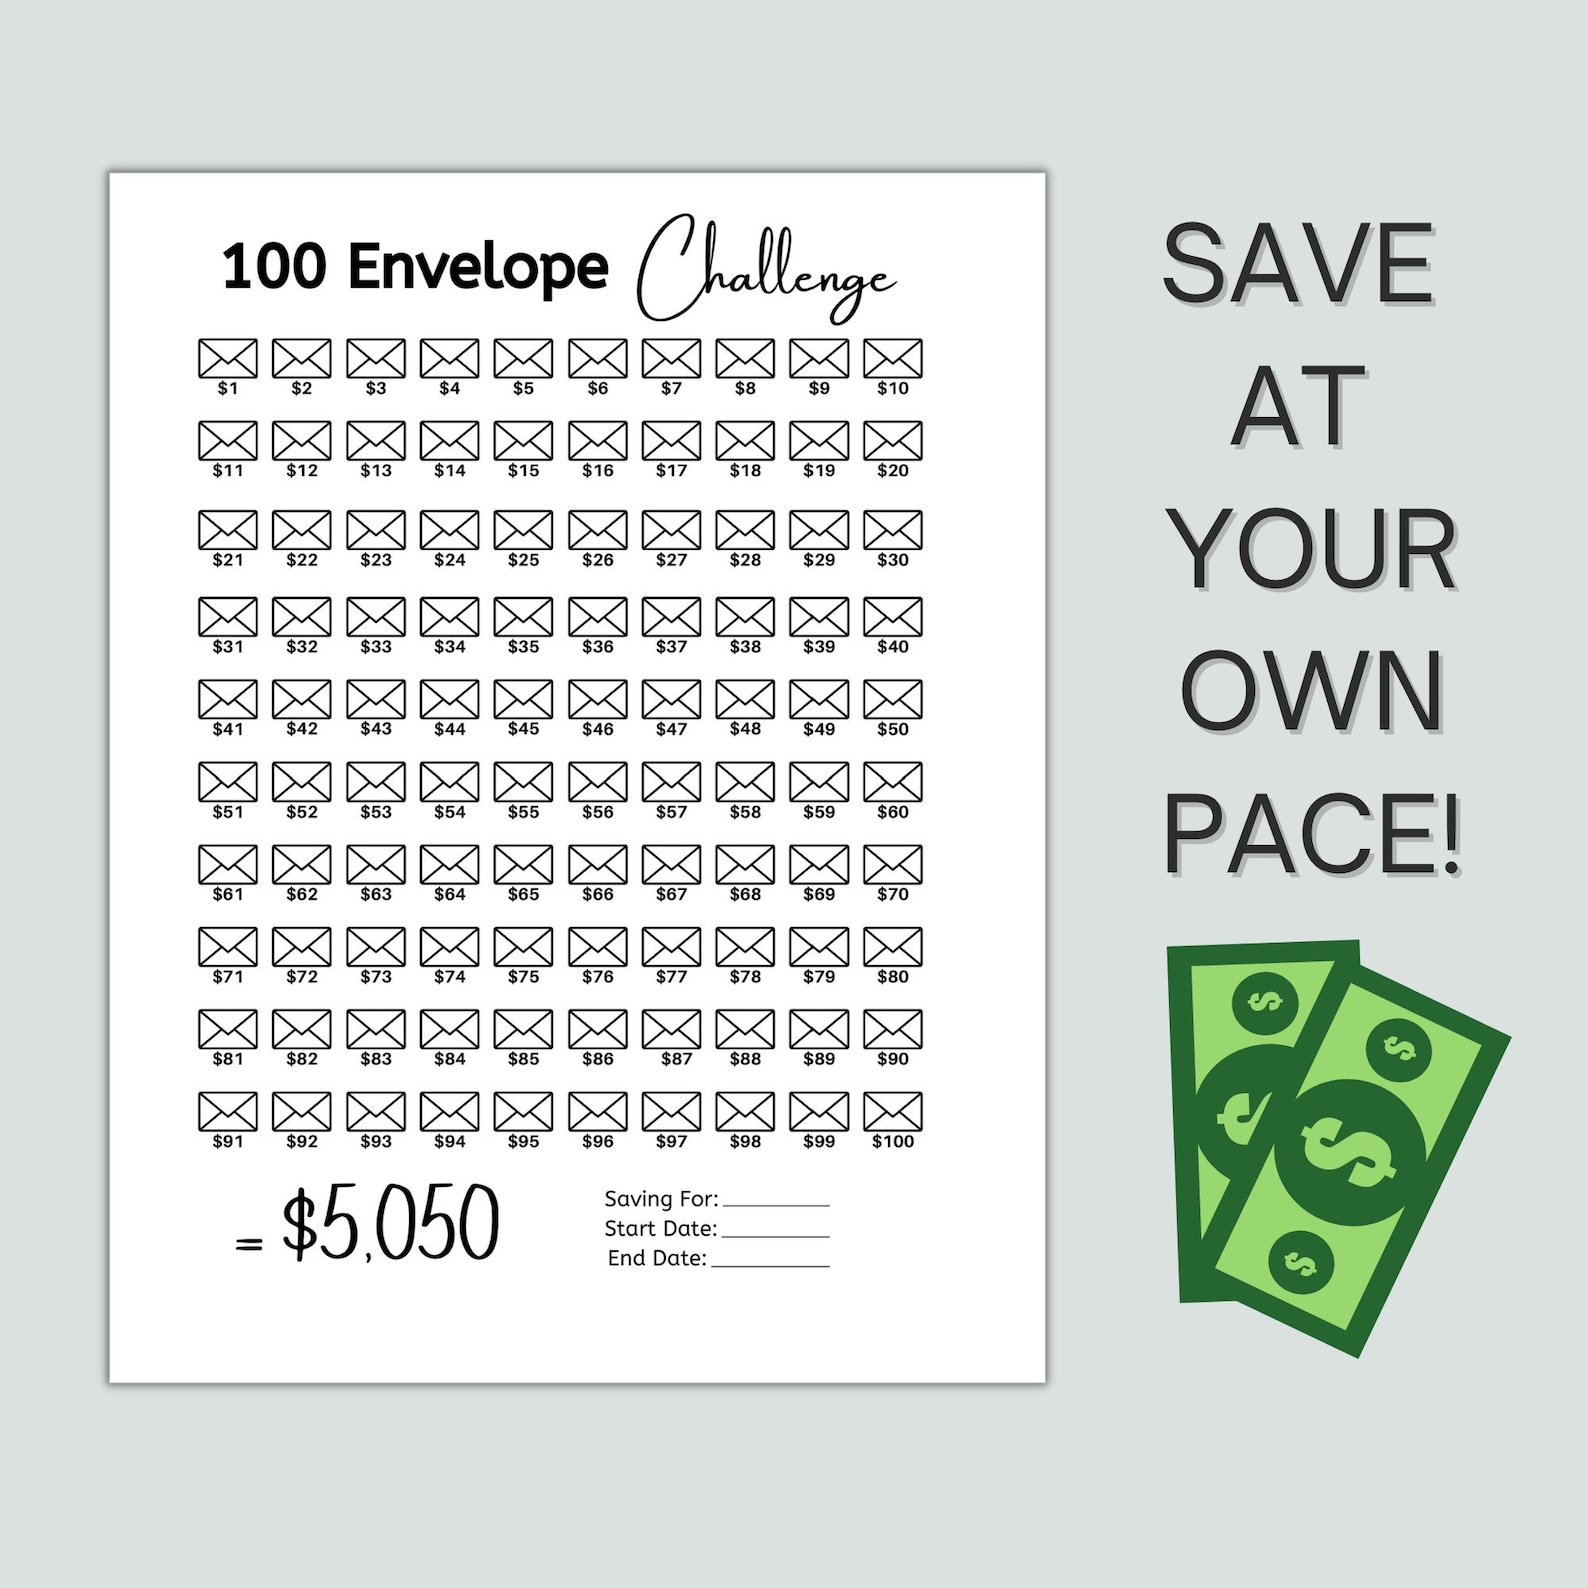 100 Envelope Challenge How Much Money